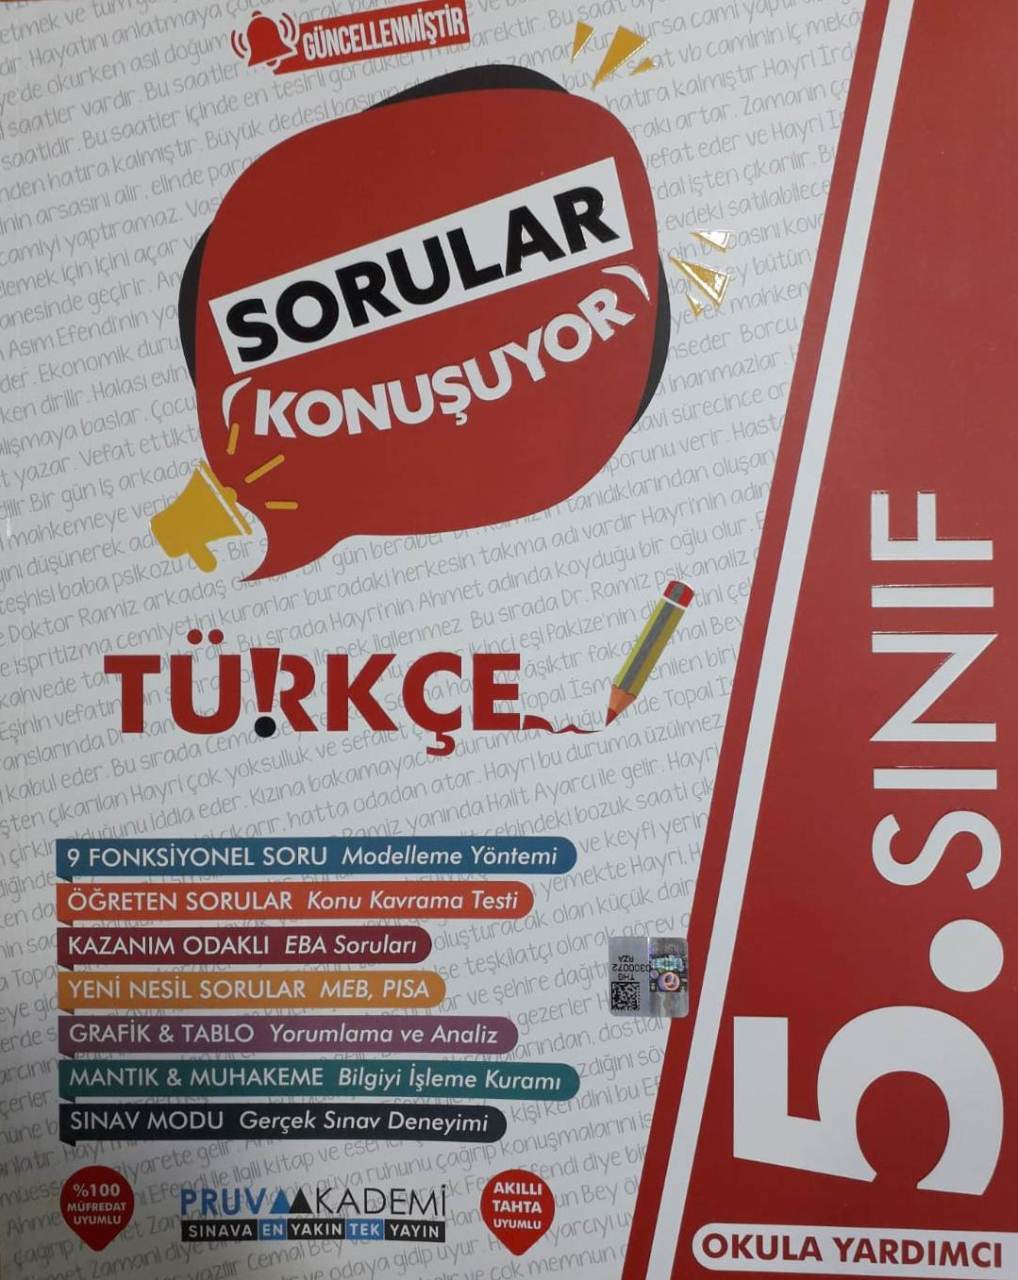 Pruva Akademi 5.Sınıf Türkçe GÜNCEL Sorular Konuşuyor Soru Bankası